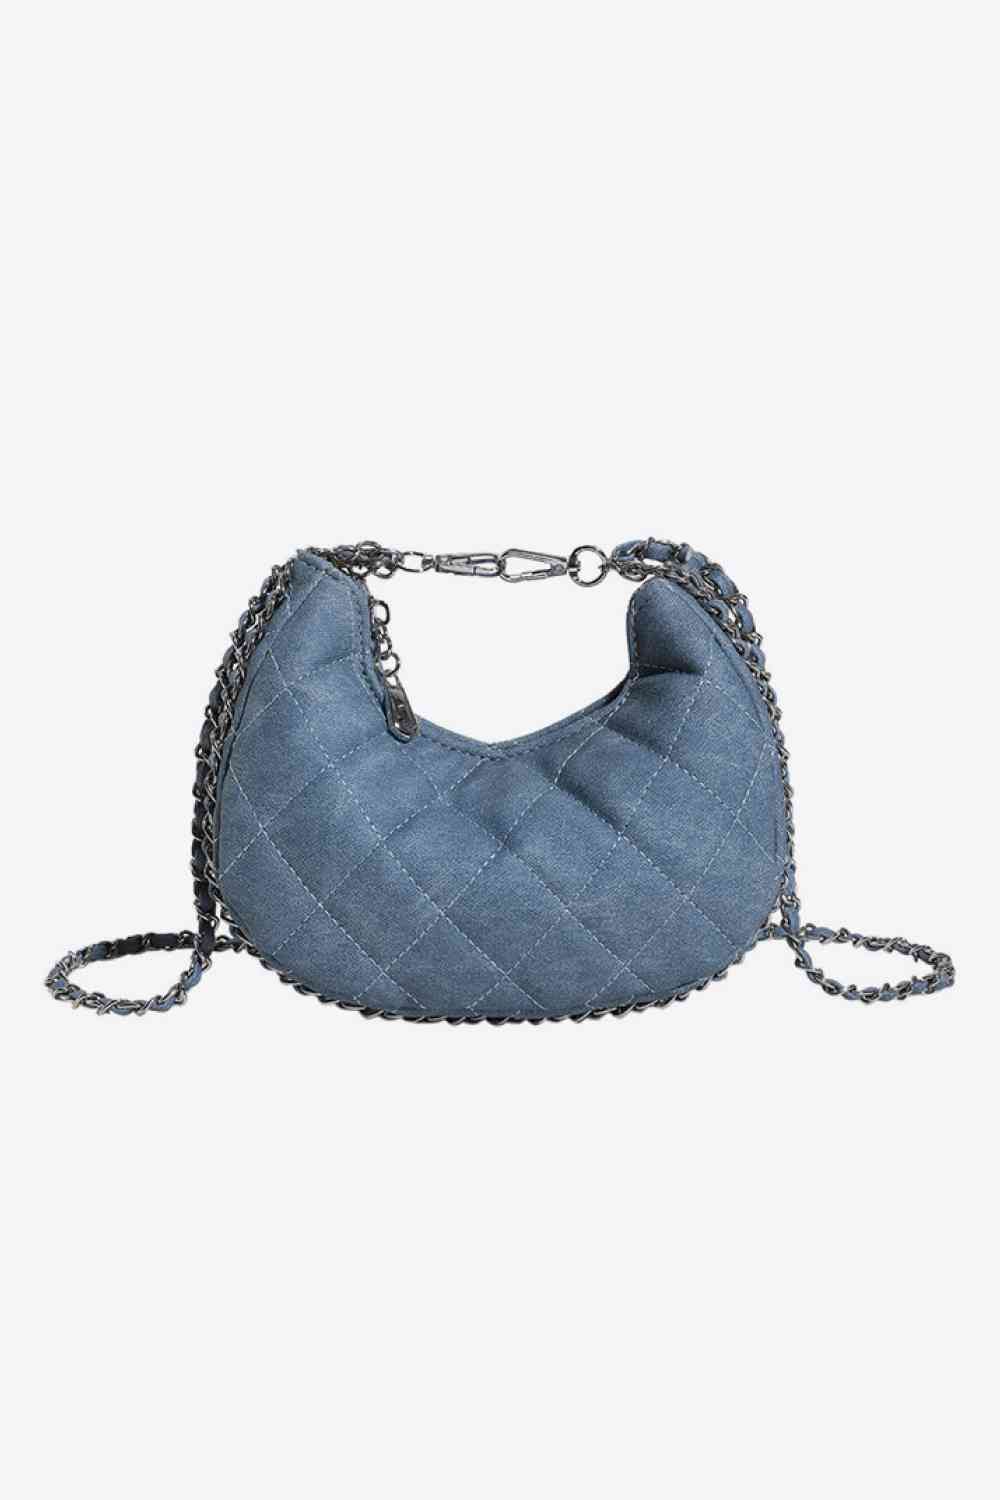 PU Leather Handbag Sky Blue One Size